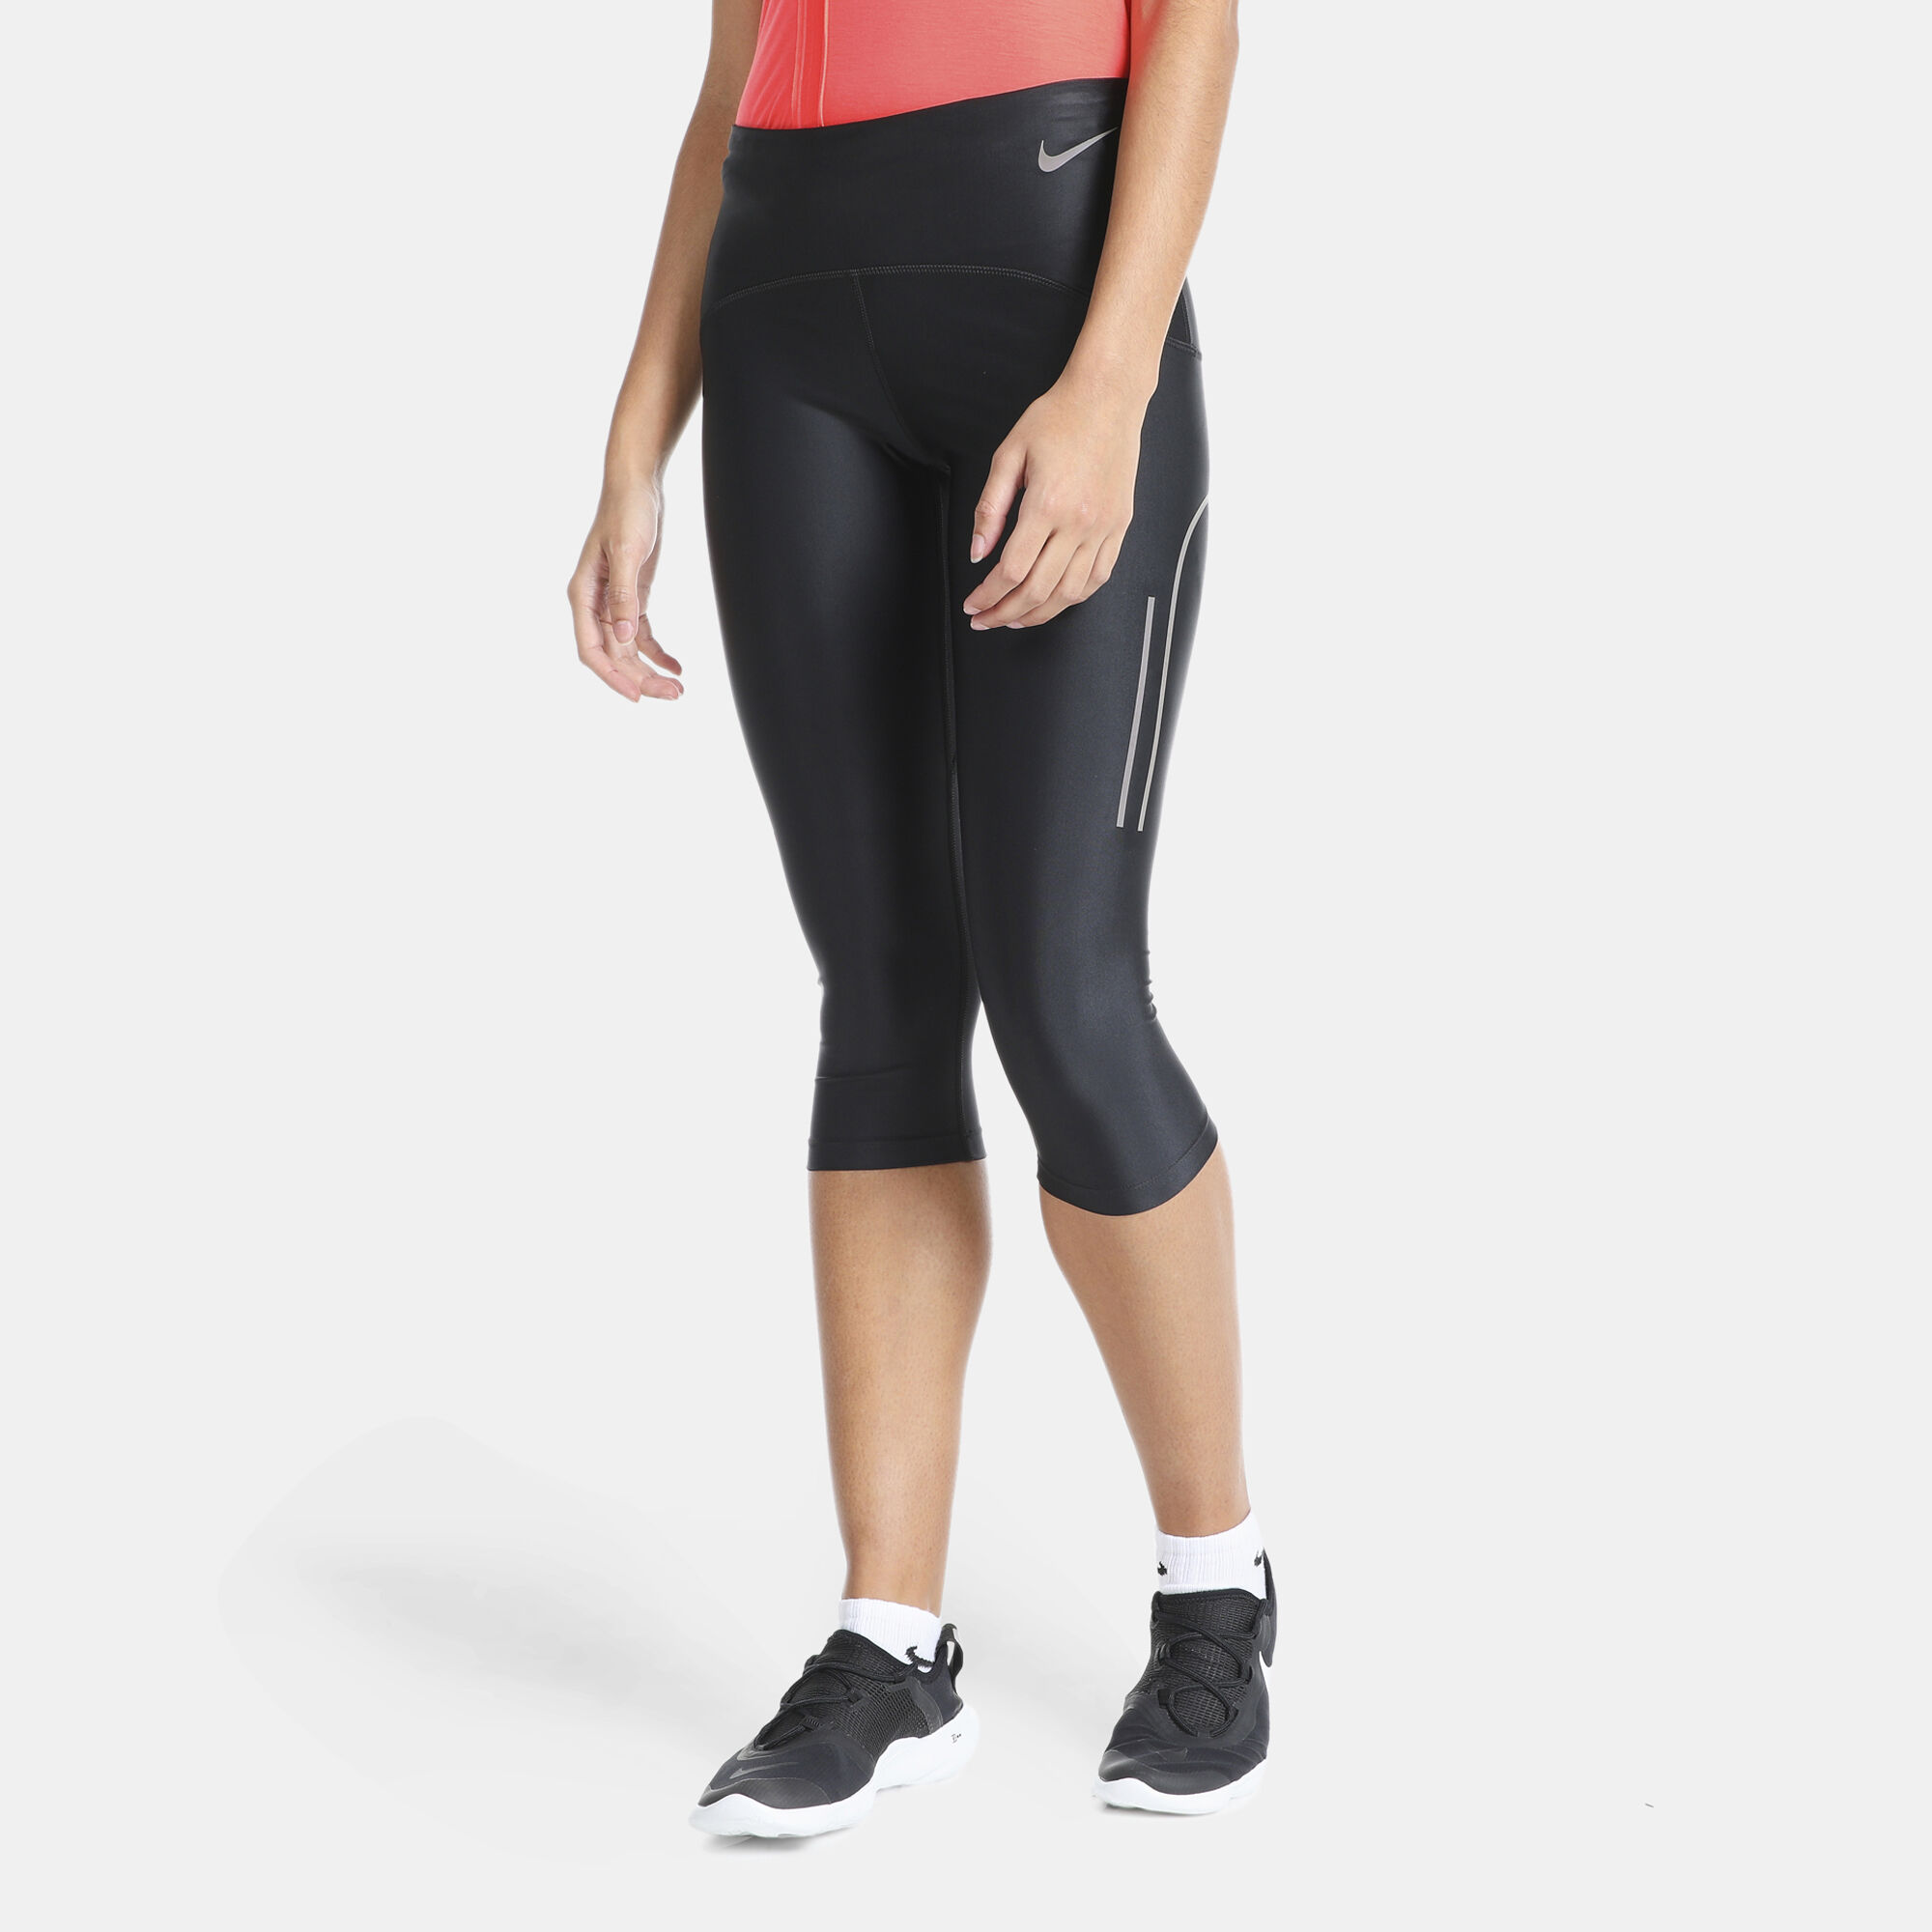 Nike DriFIT Capri Pants  Older fashion Clothes design Nike dri fit